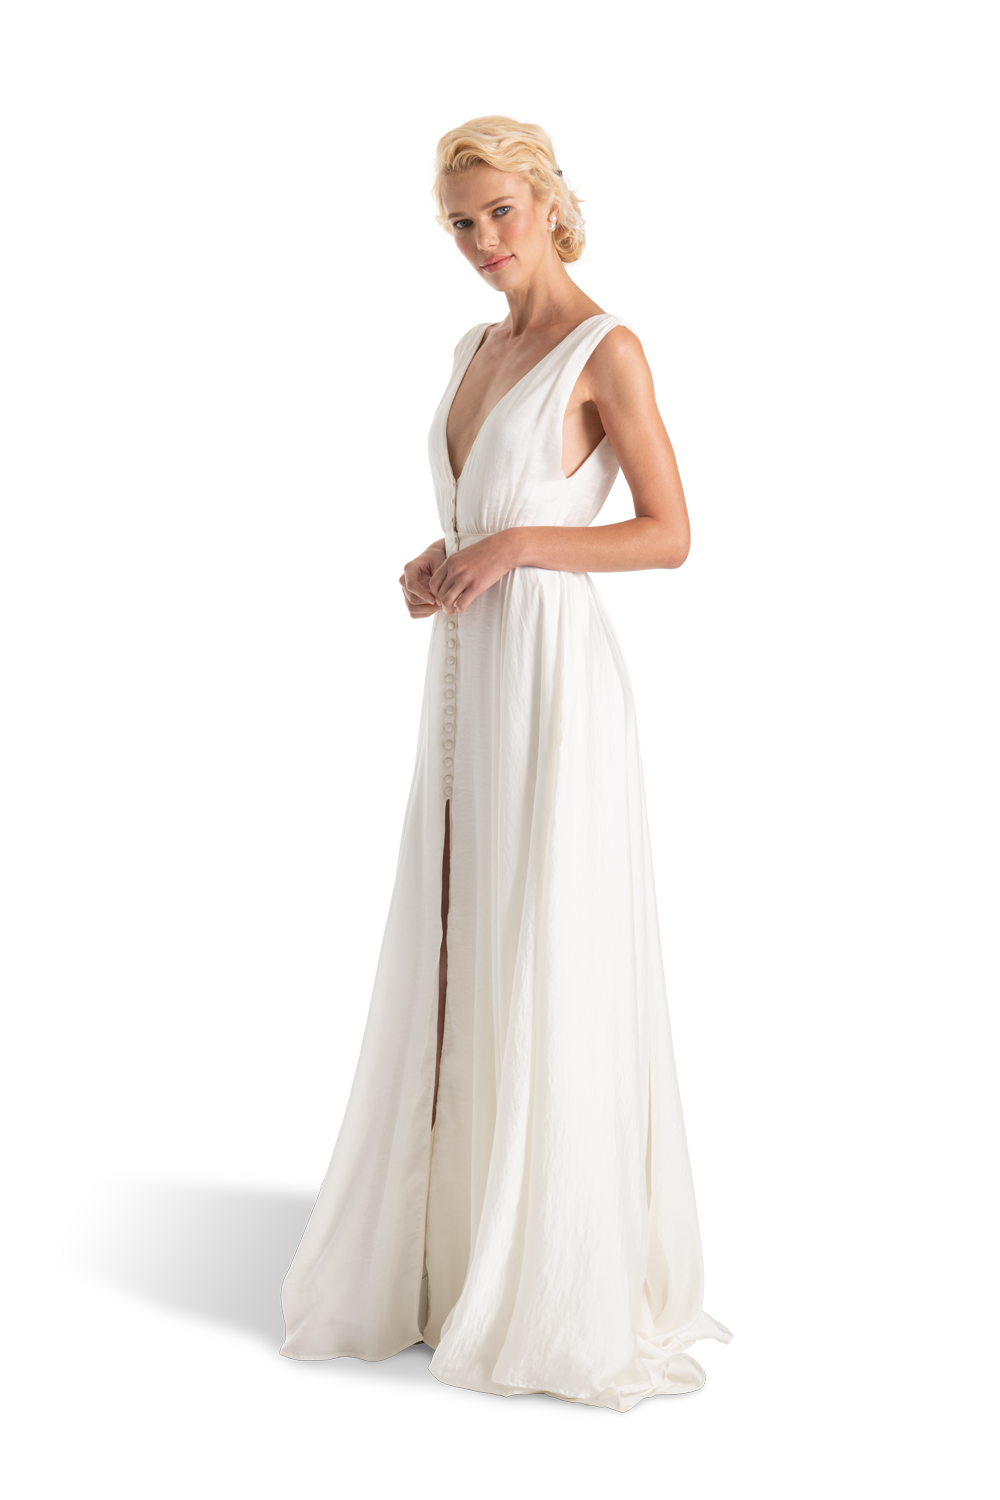 GC#911963 - Joanna August Joplin Dress in Size 12